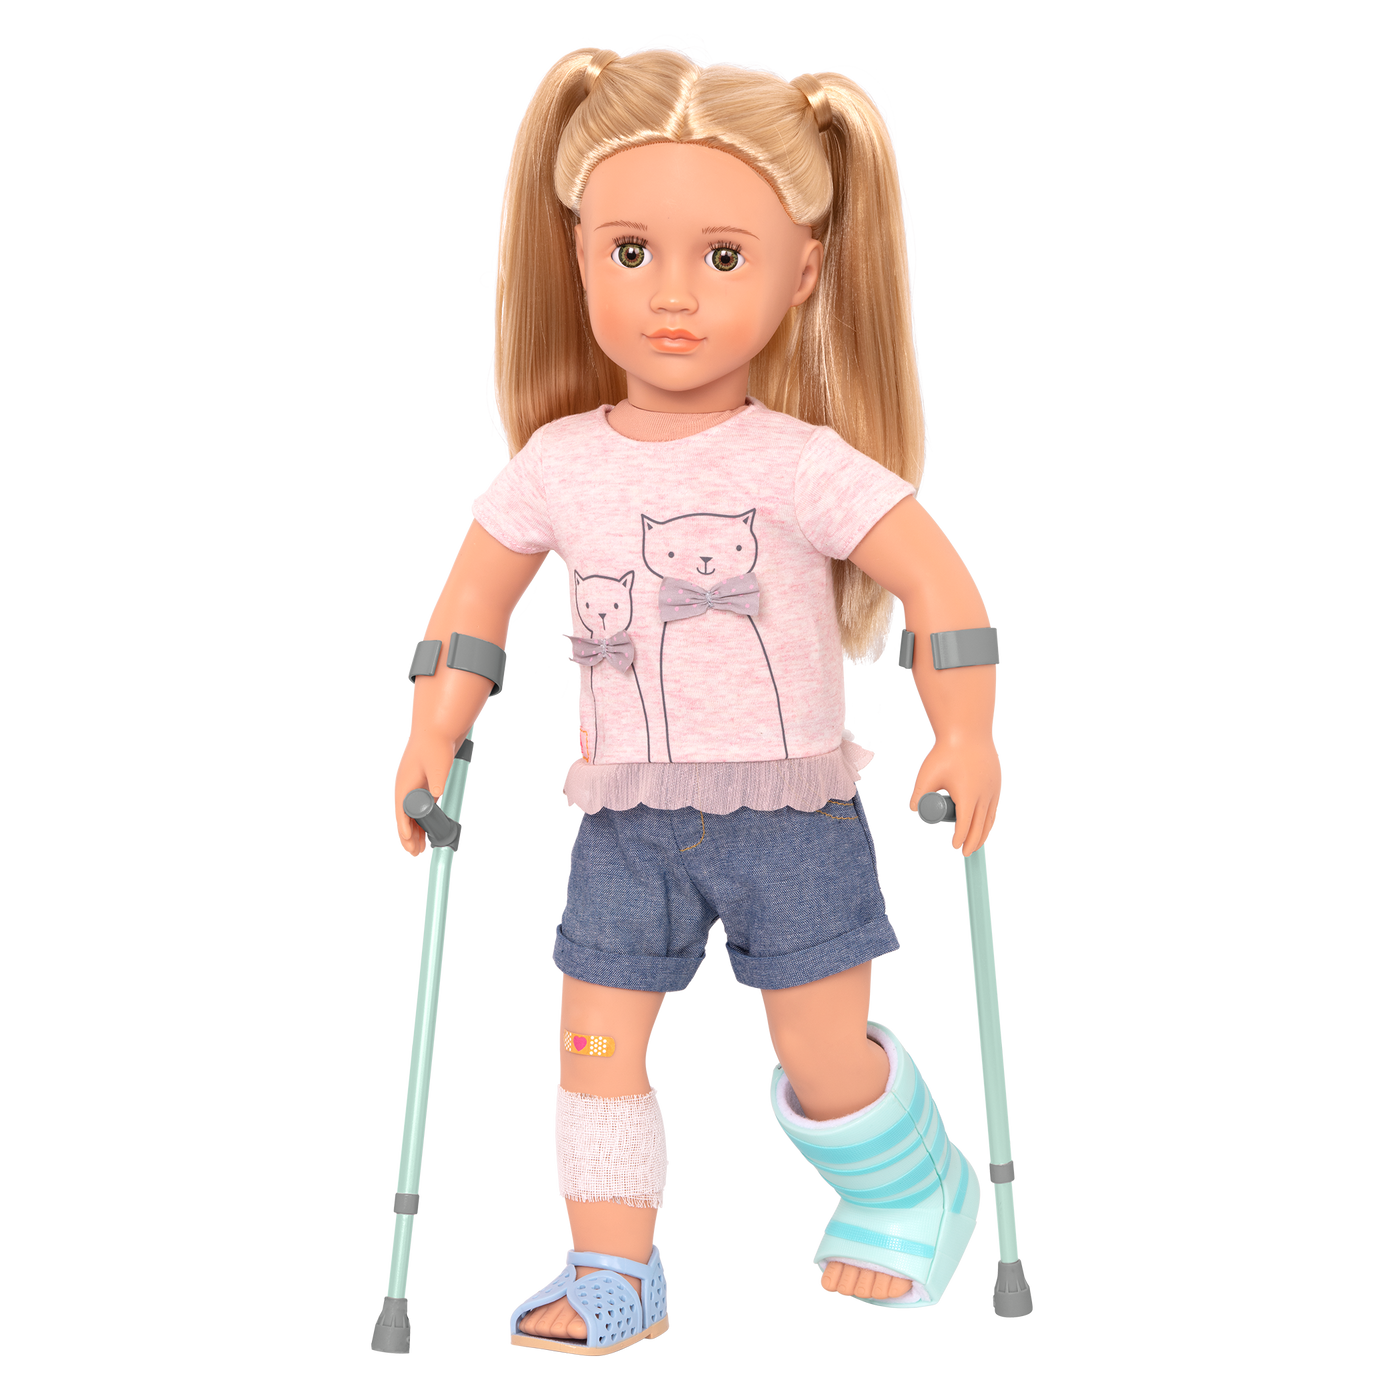 18-inch doll on crutches